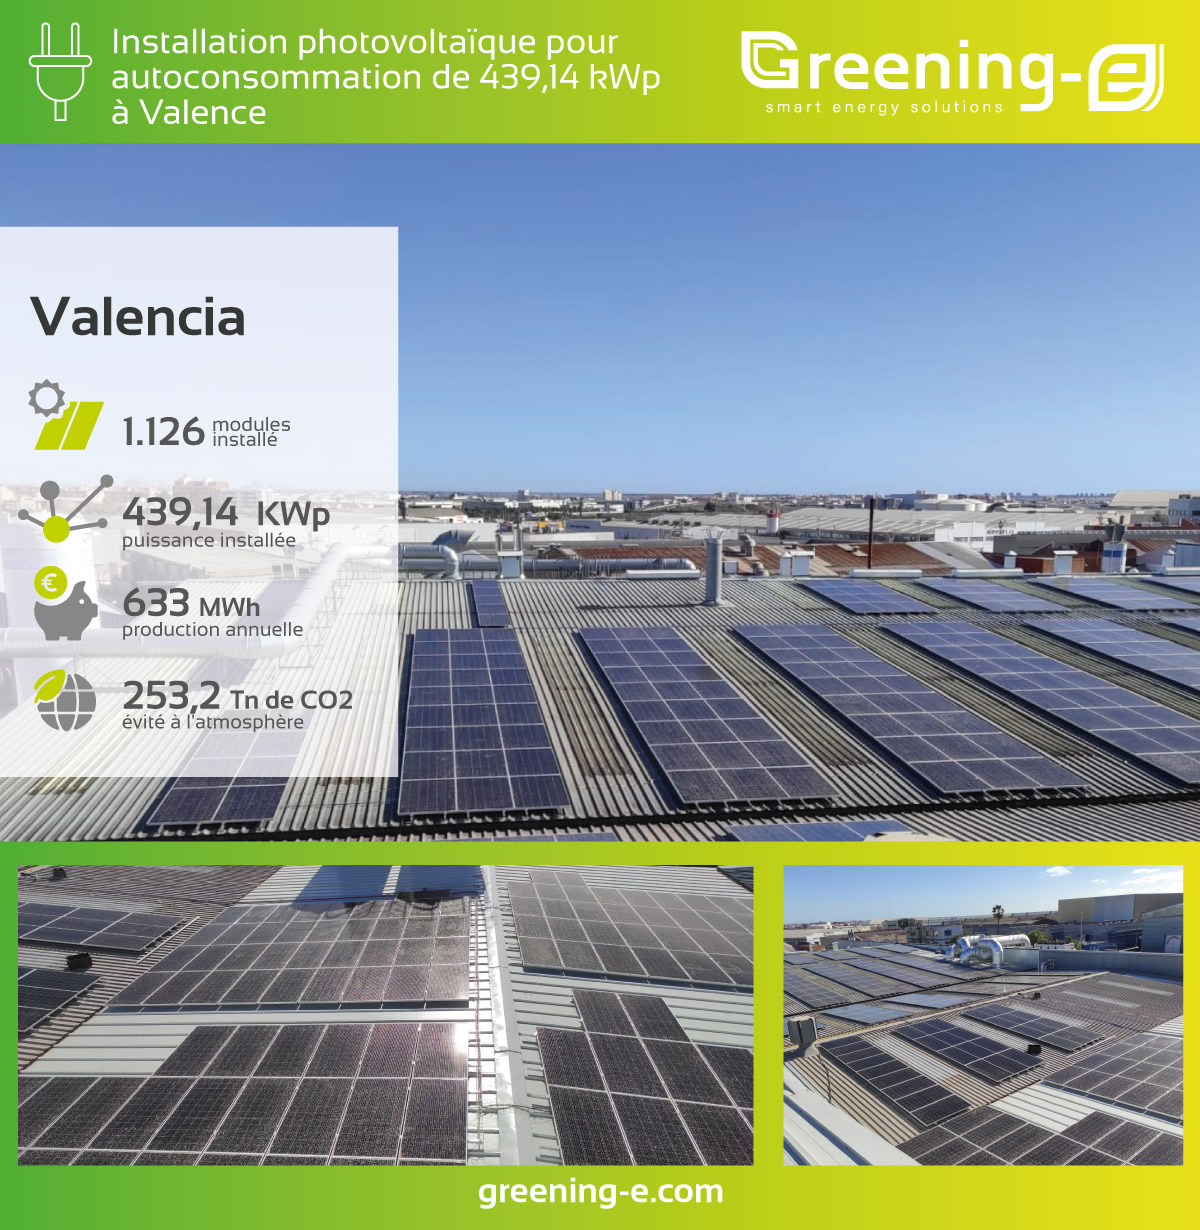 Installations Greening-e Installation photovoltaïque pour l'autoconsommation de 439,14 kWp à Valence